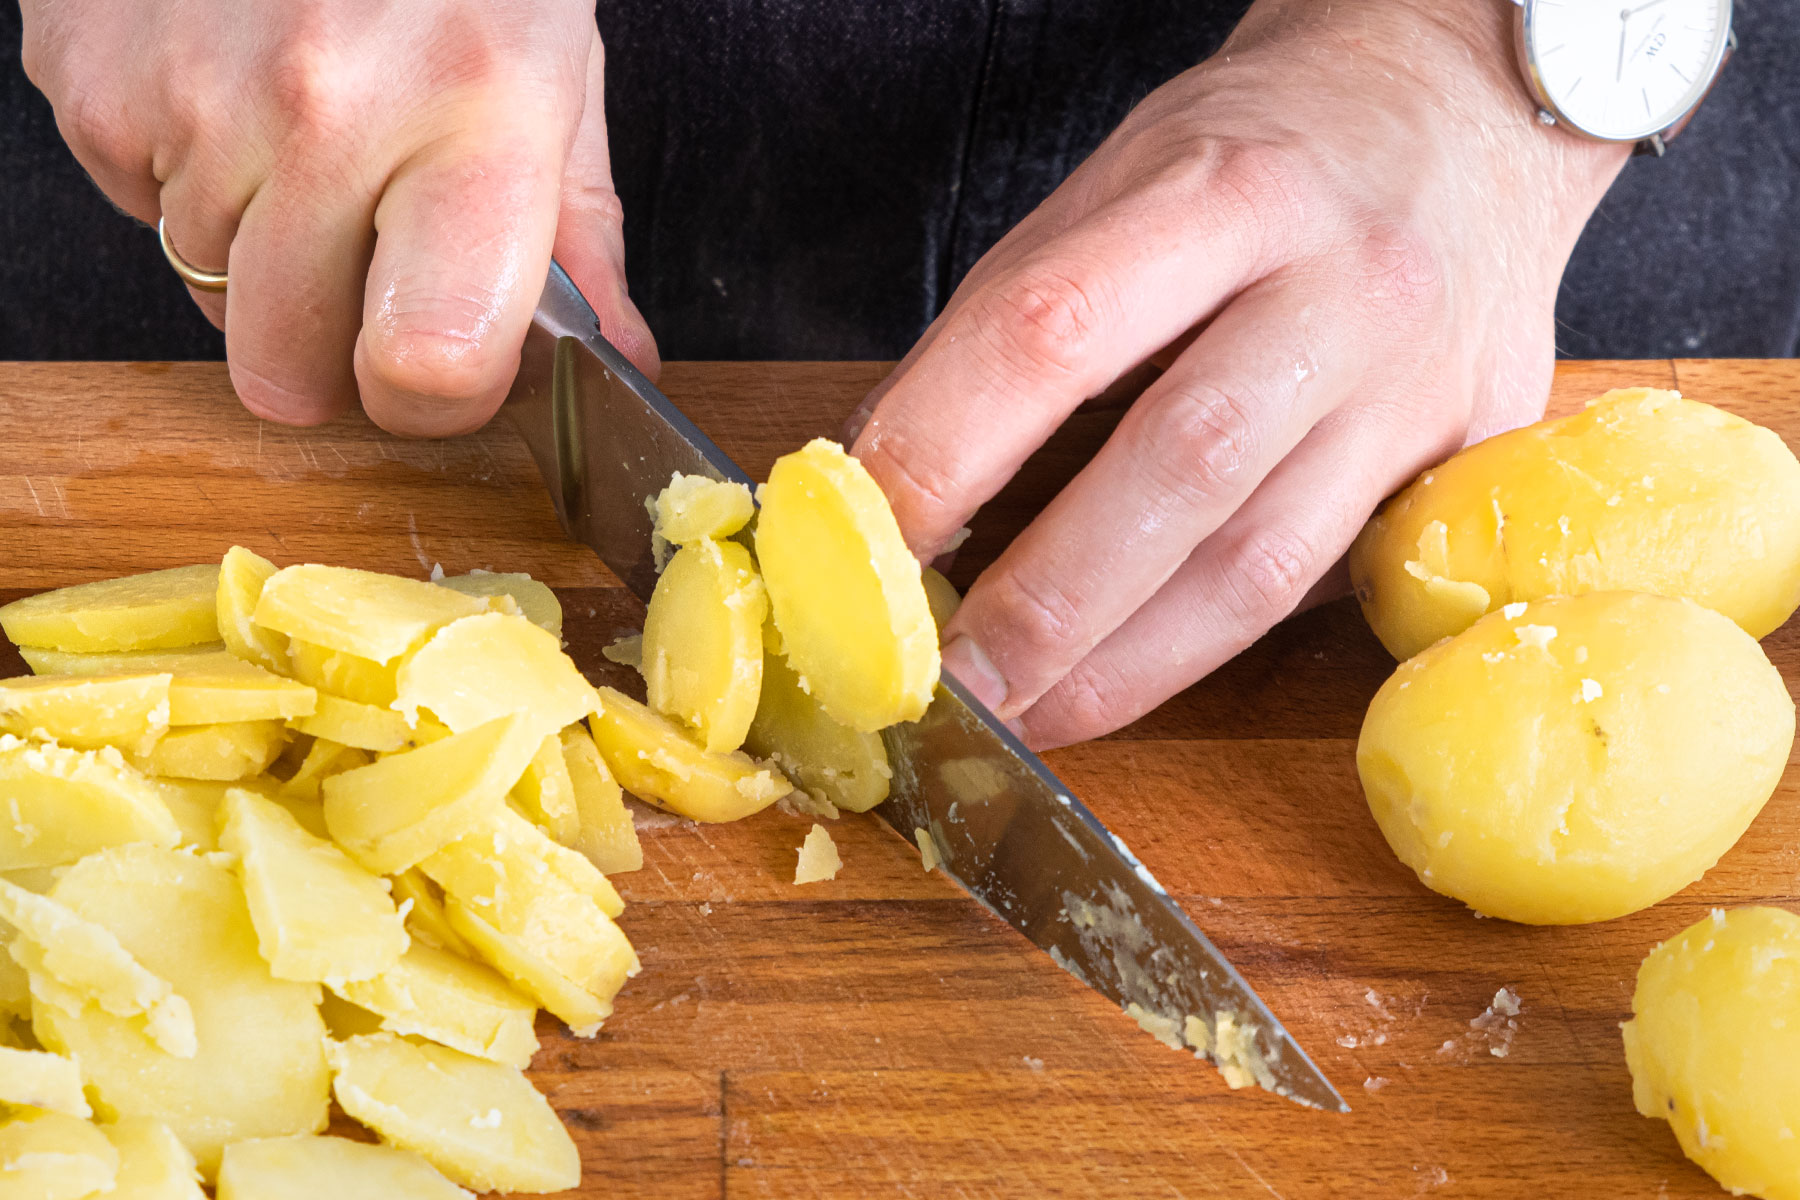 Kartoffeln in Scheiben schneiden